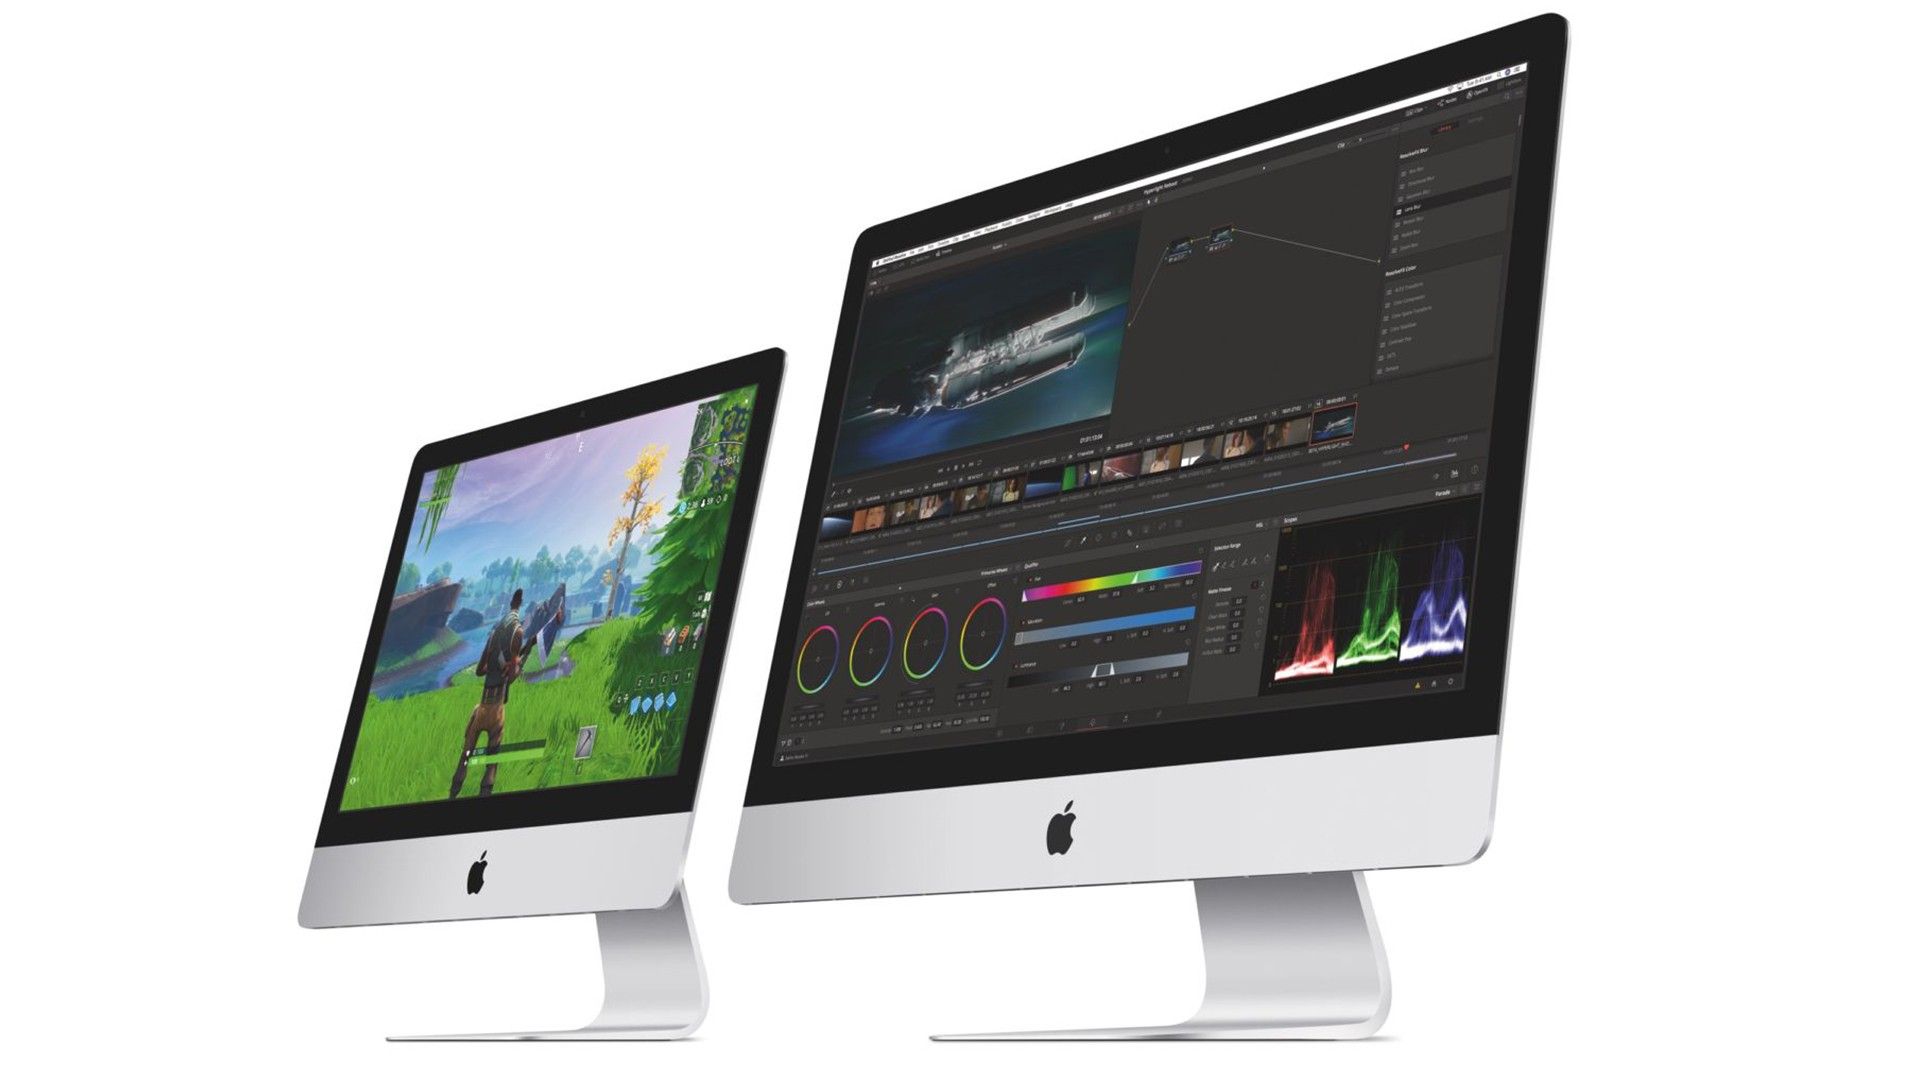 New 2019 iMacs